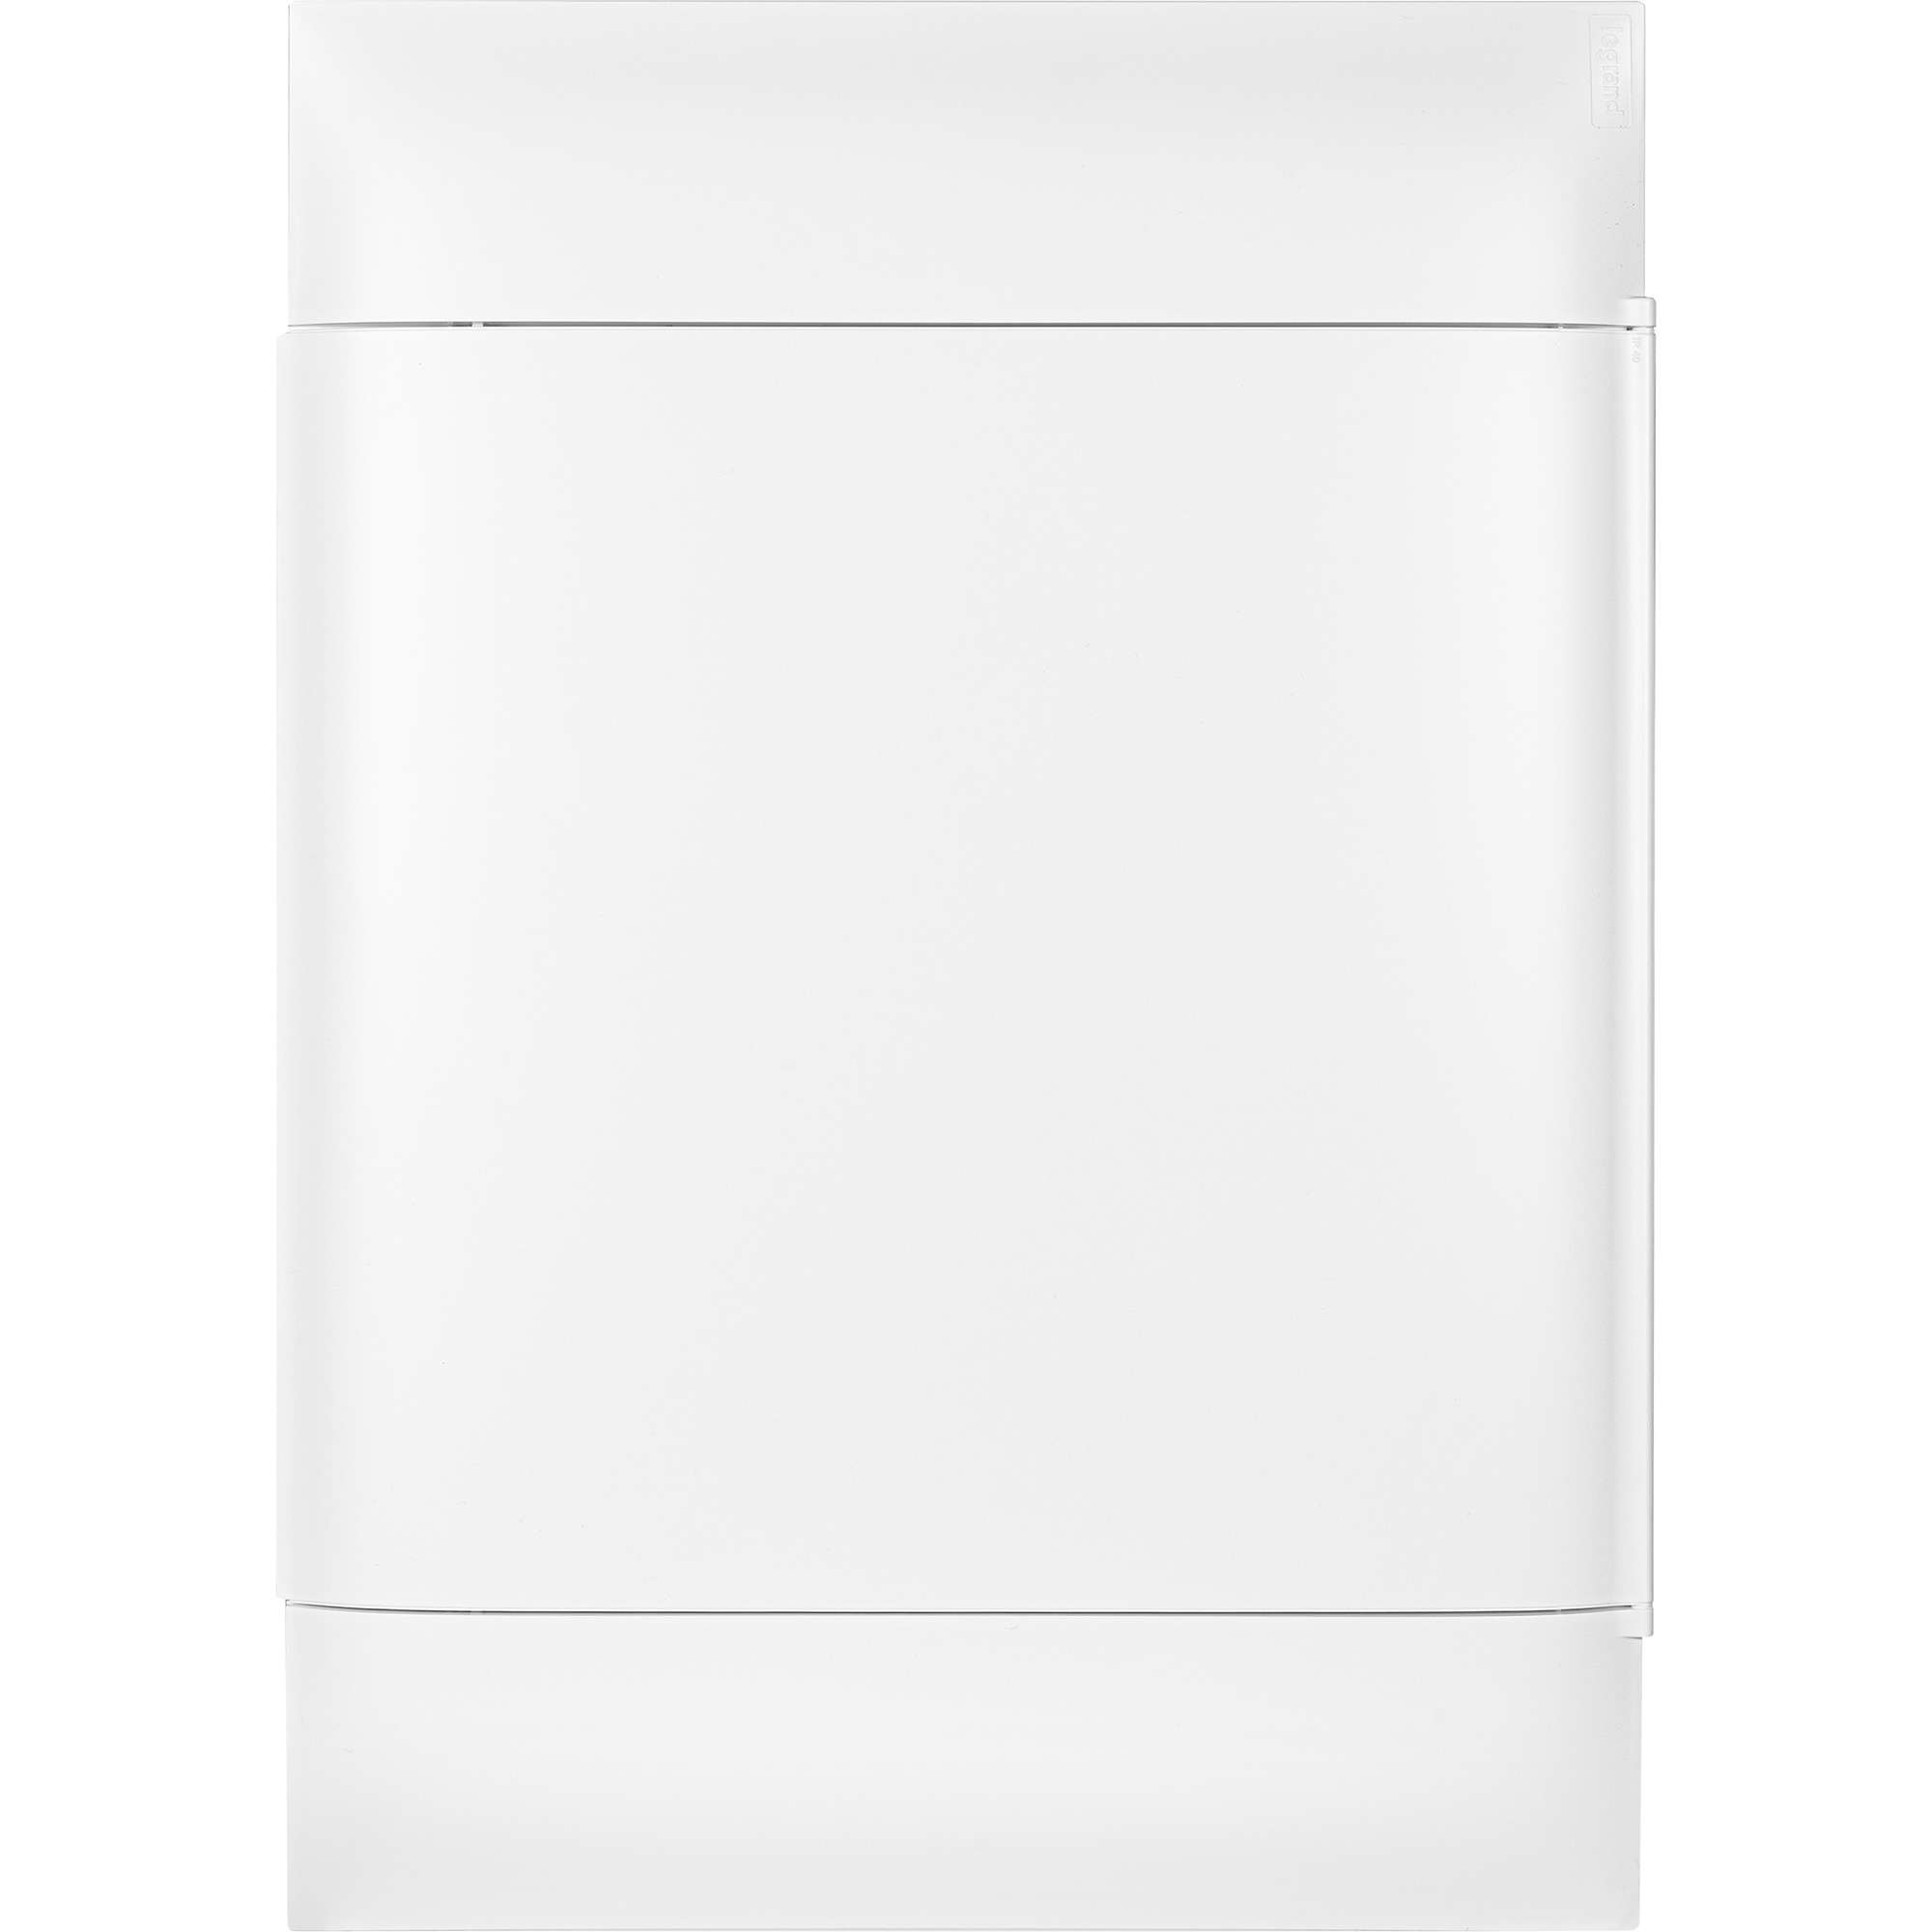 

Пластиковый щиток на 54 модуля (3х18) Legrand Practibox S для встраиваемого монтажа в полые стены, цвет двери белый, Practibox S